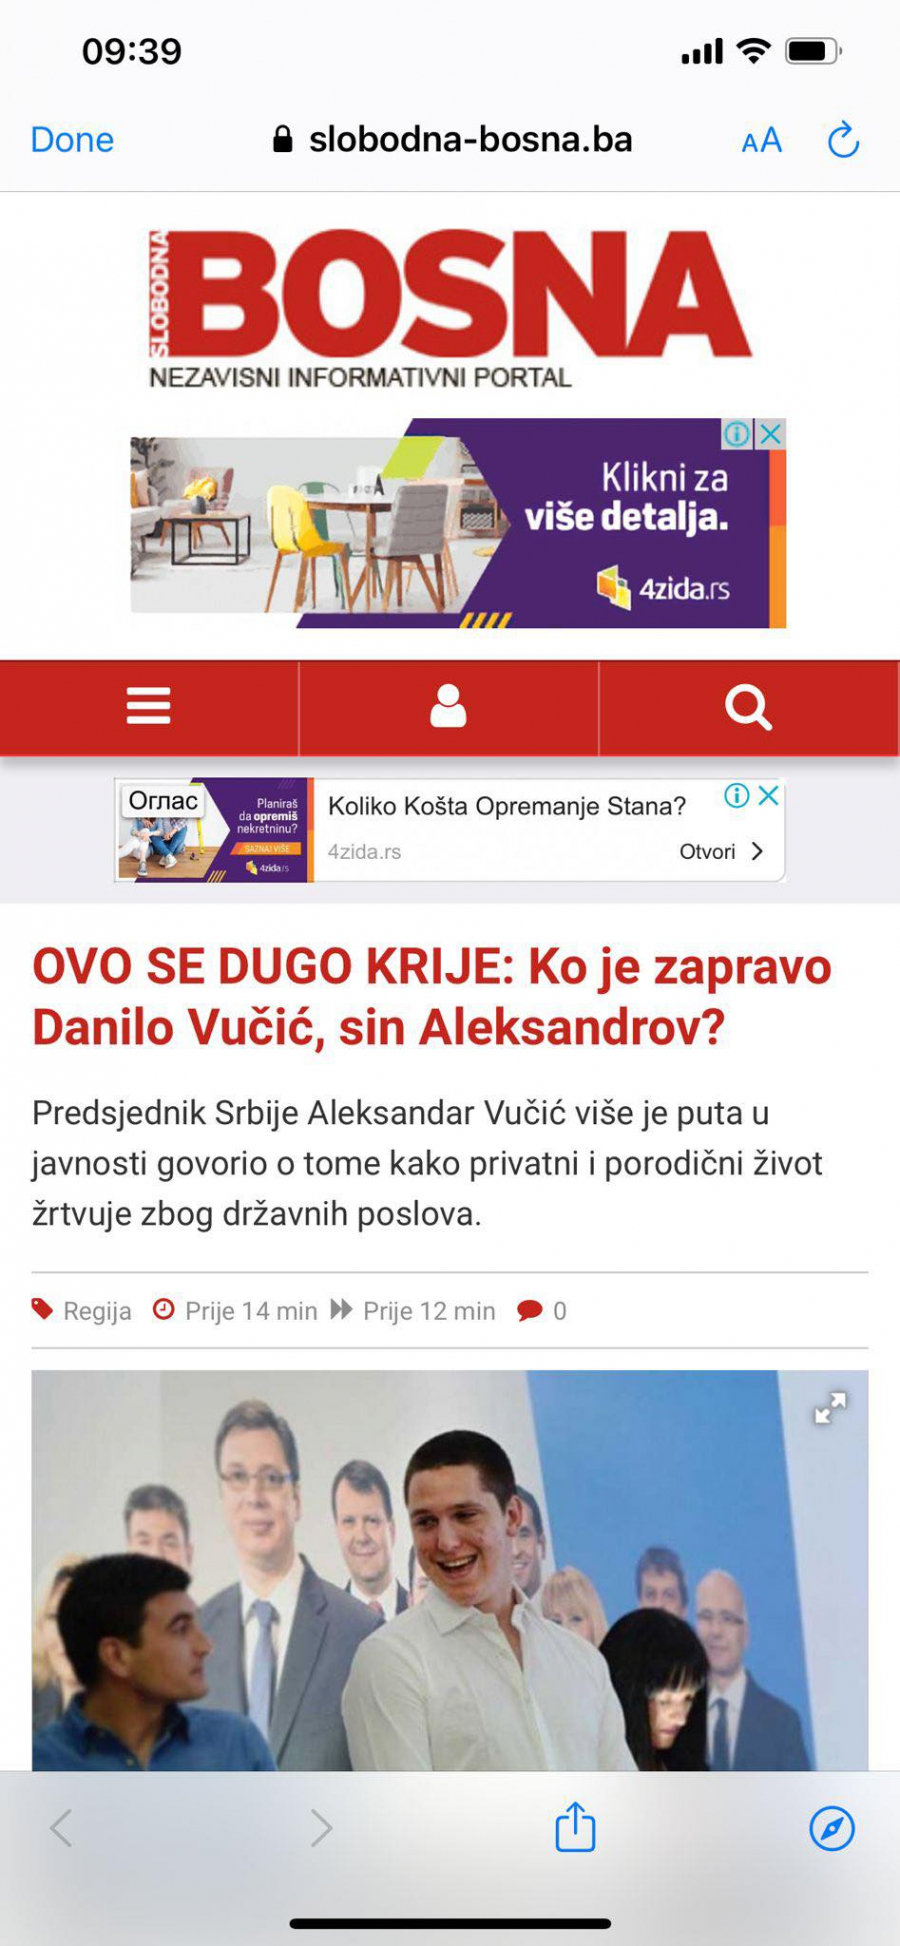 ĐILAS AKTIVIRAO USTAŠKE MEDIJE U REGIONU Uništite život Danilu Vučiću! (FOTO)